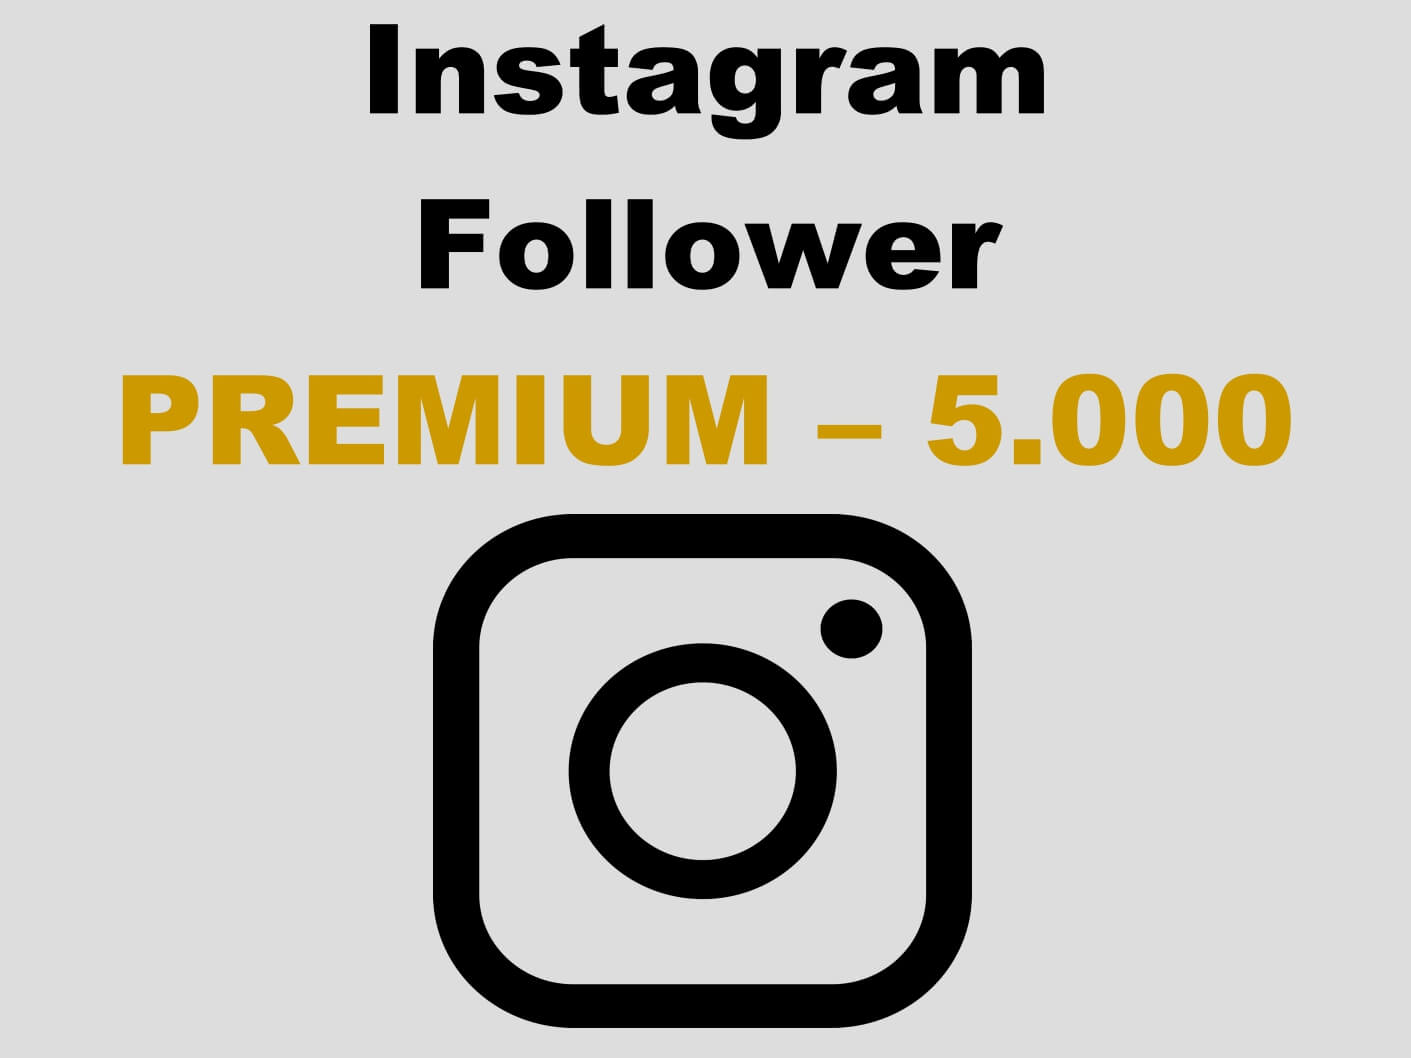 Premium Instagram Follower kaufen 5.000 - Per PayPal und AmEx